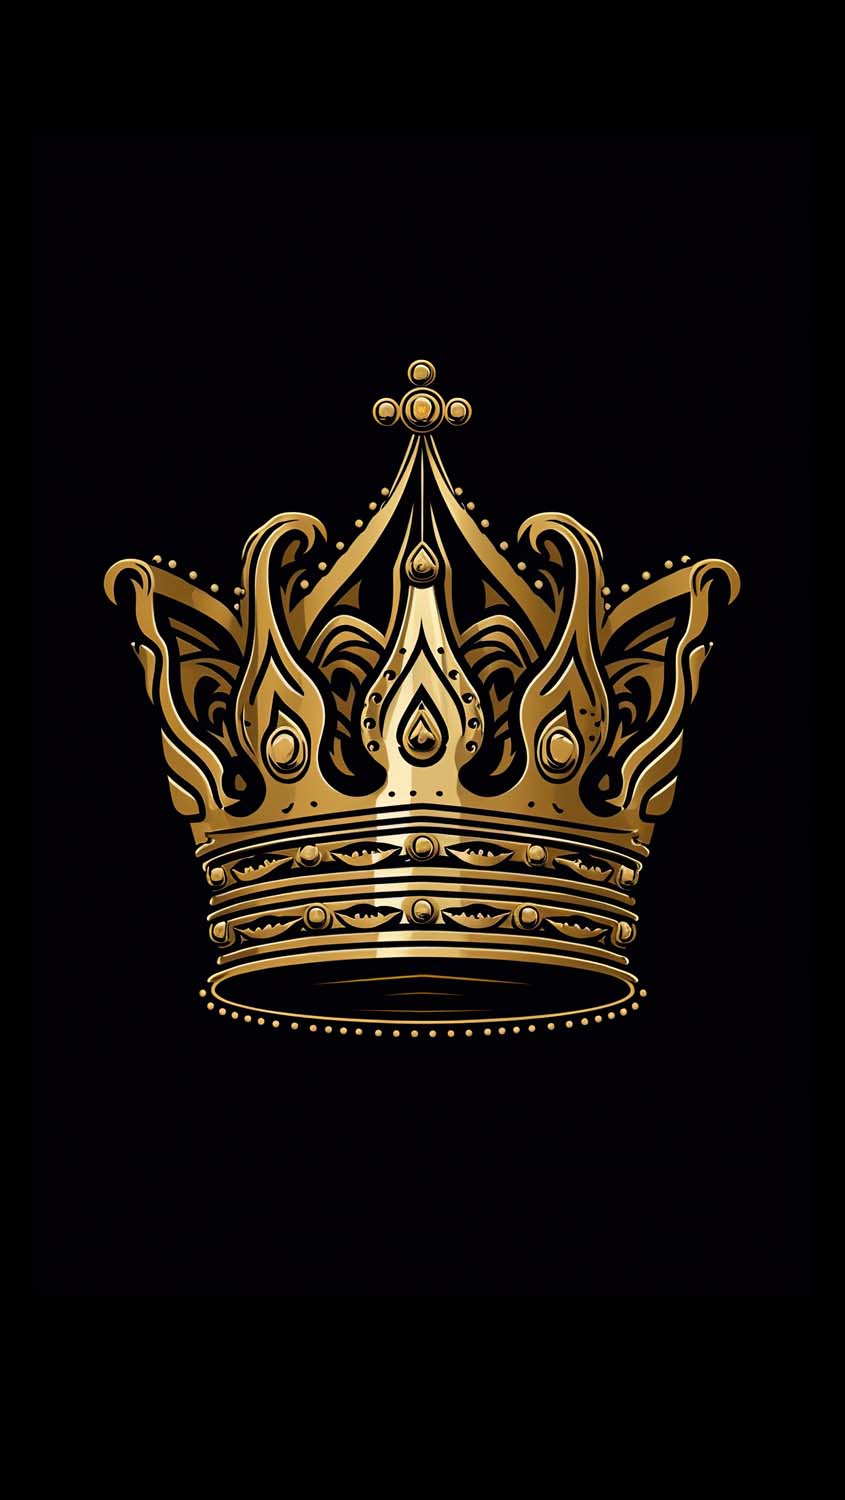 Golden Crown iPhone Wallpaper 4K